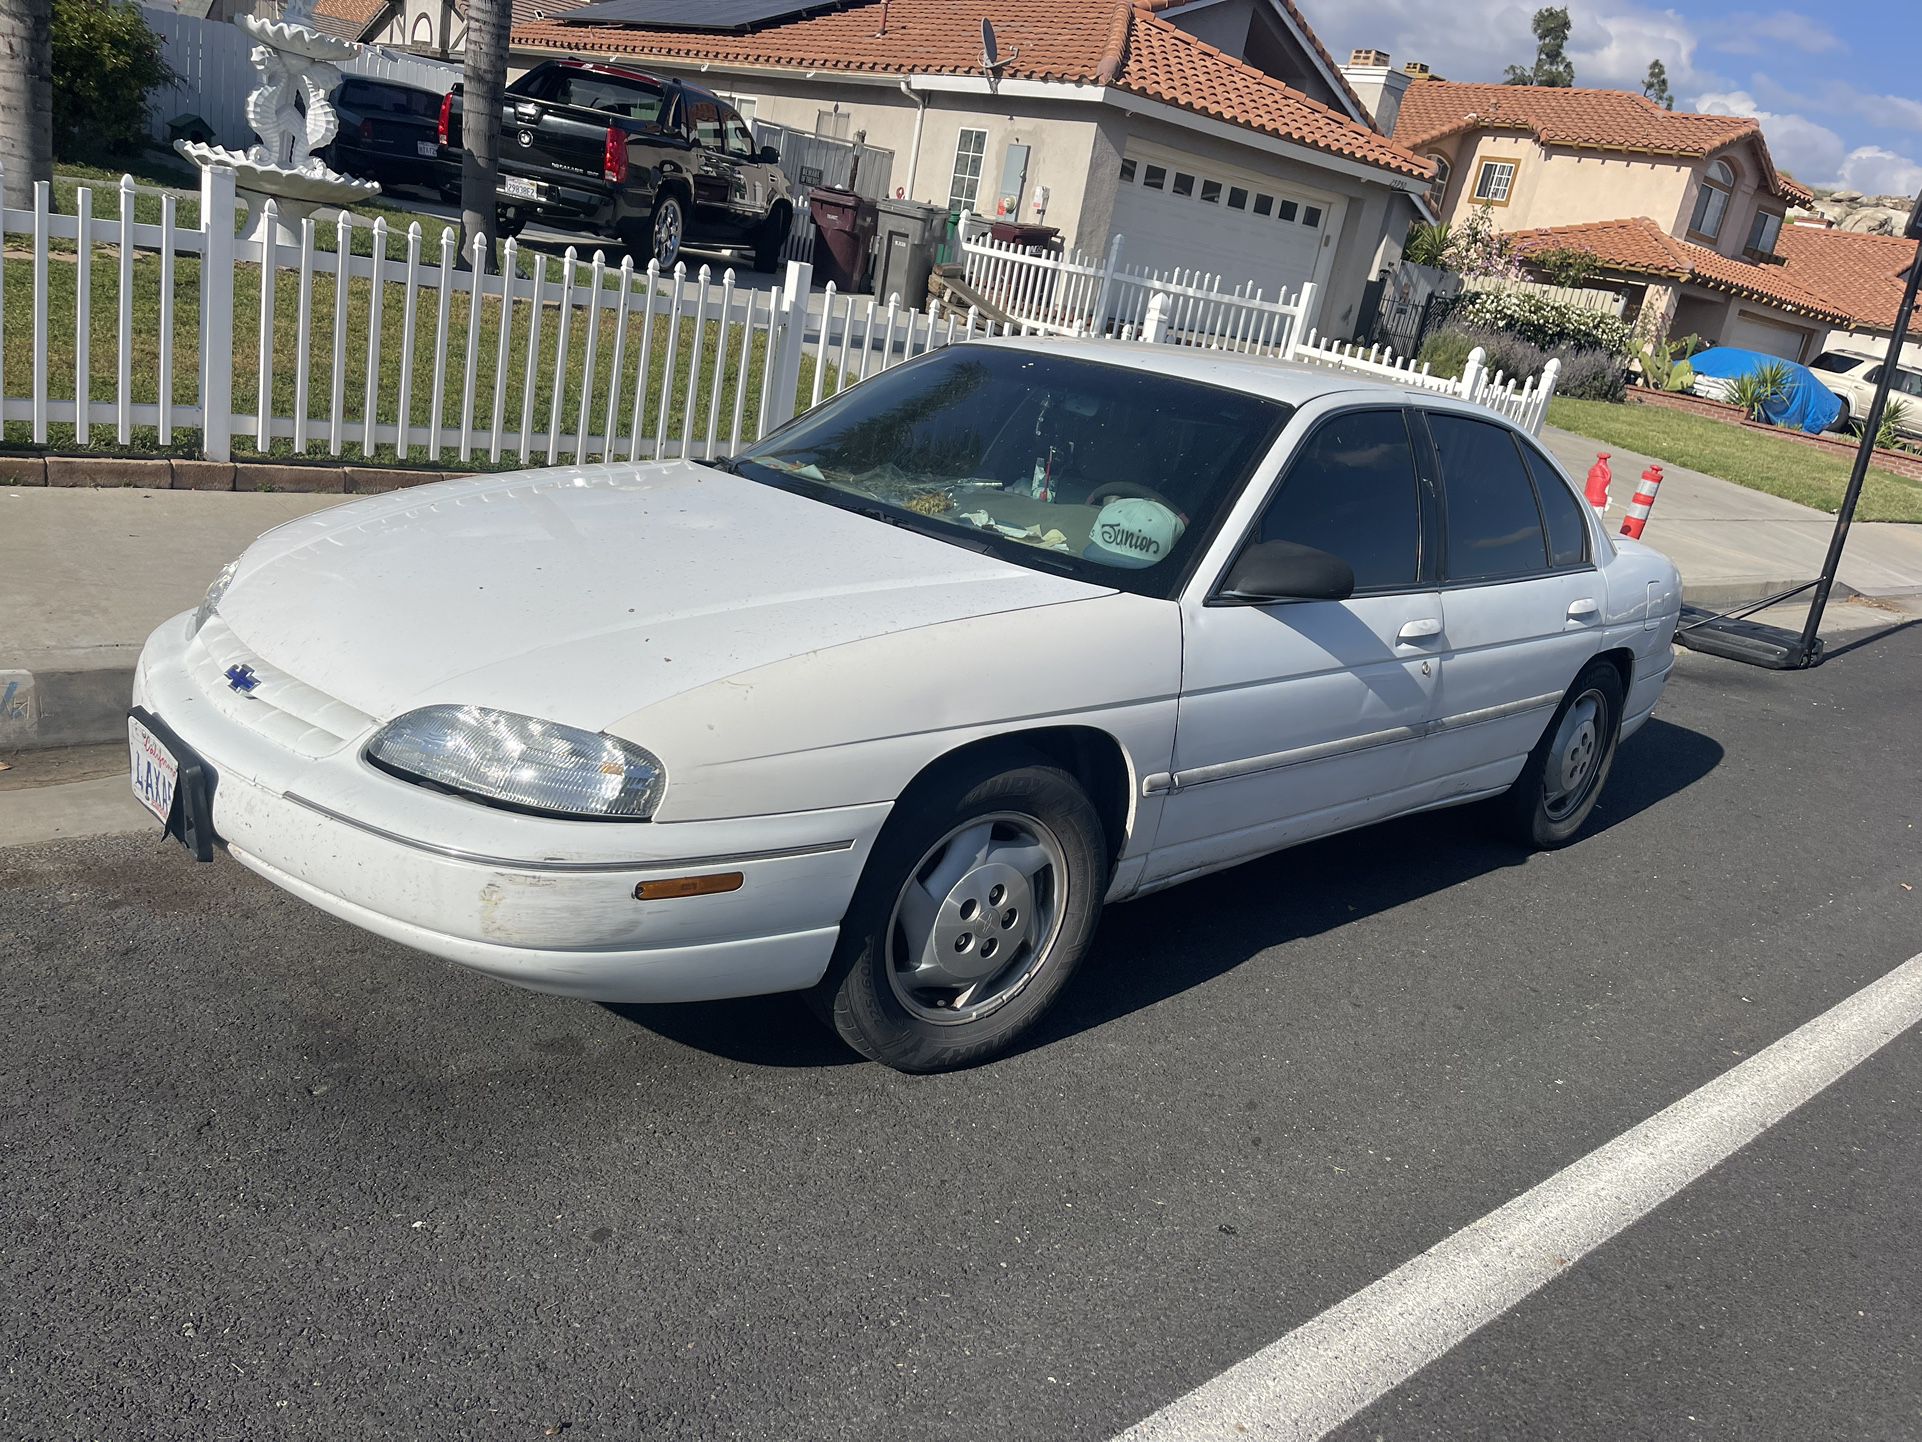 1998 Chevrolet Lumina